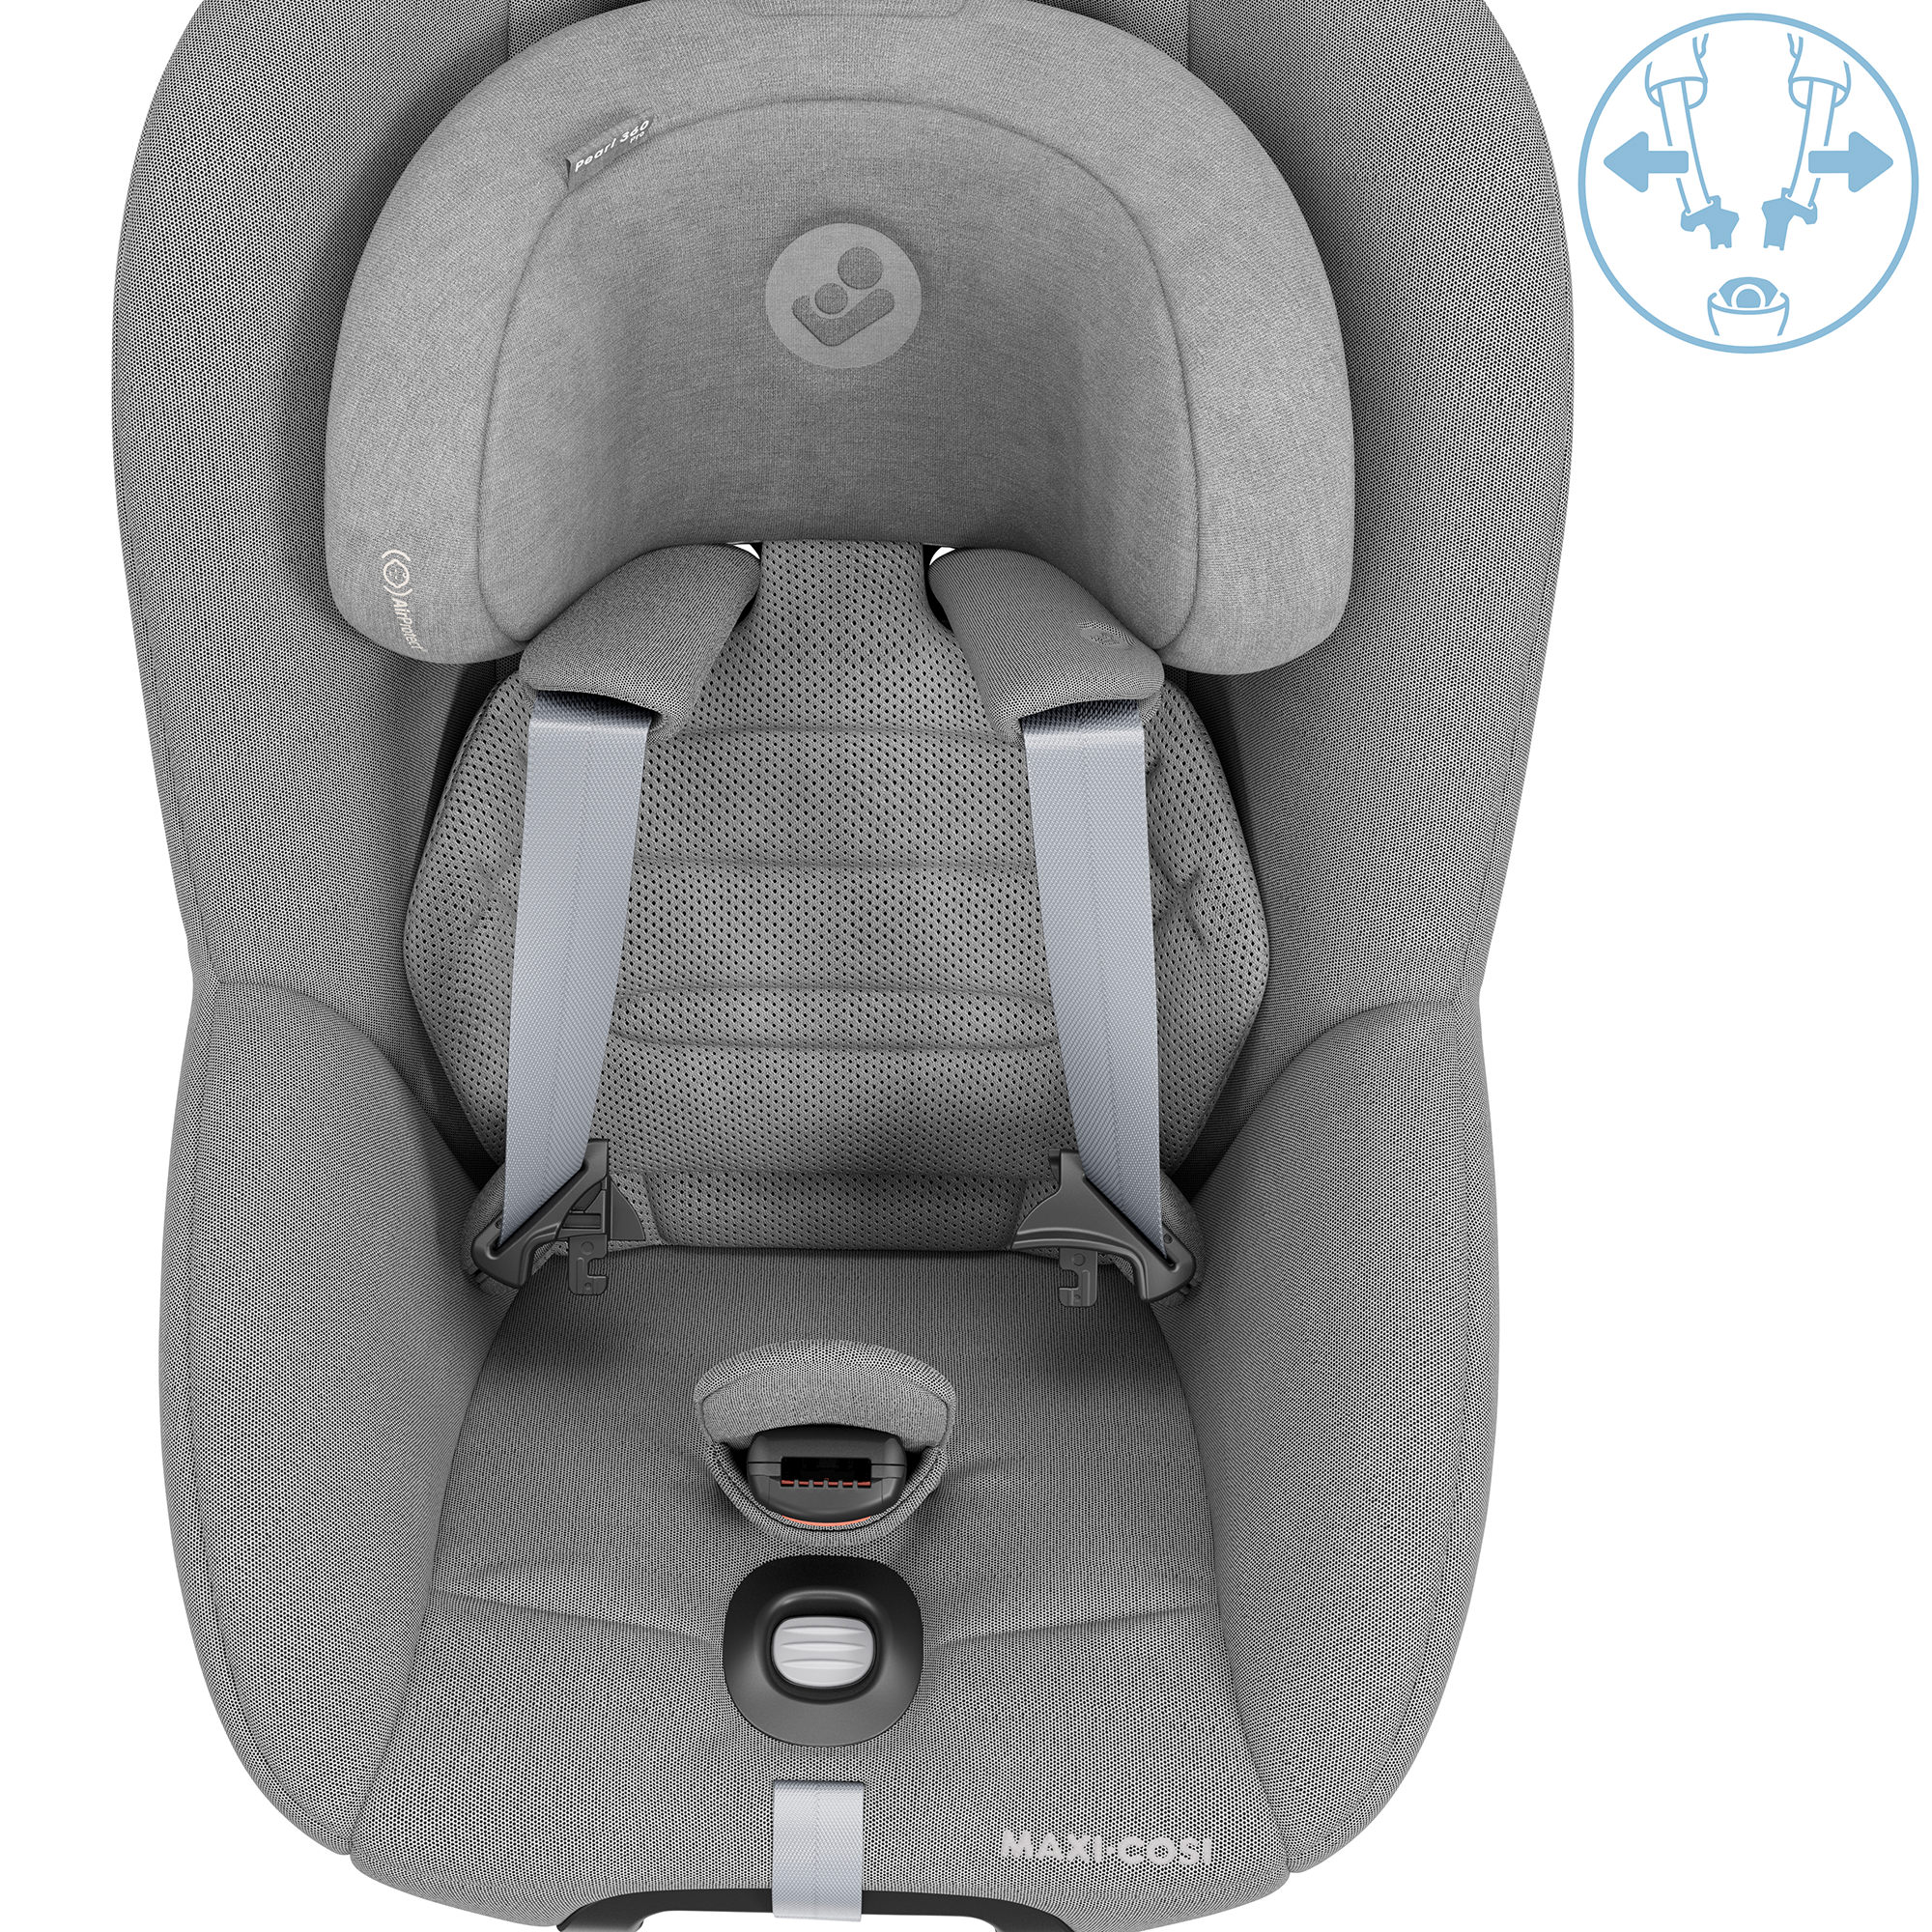 Maxi-Cosi - Kindersitz Pearl 360 Pro i-Size inkl. Isofix-Basis Family Fix  360 Pro